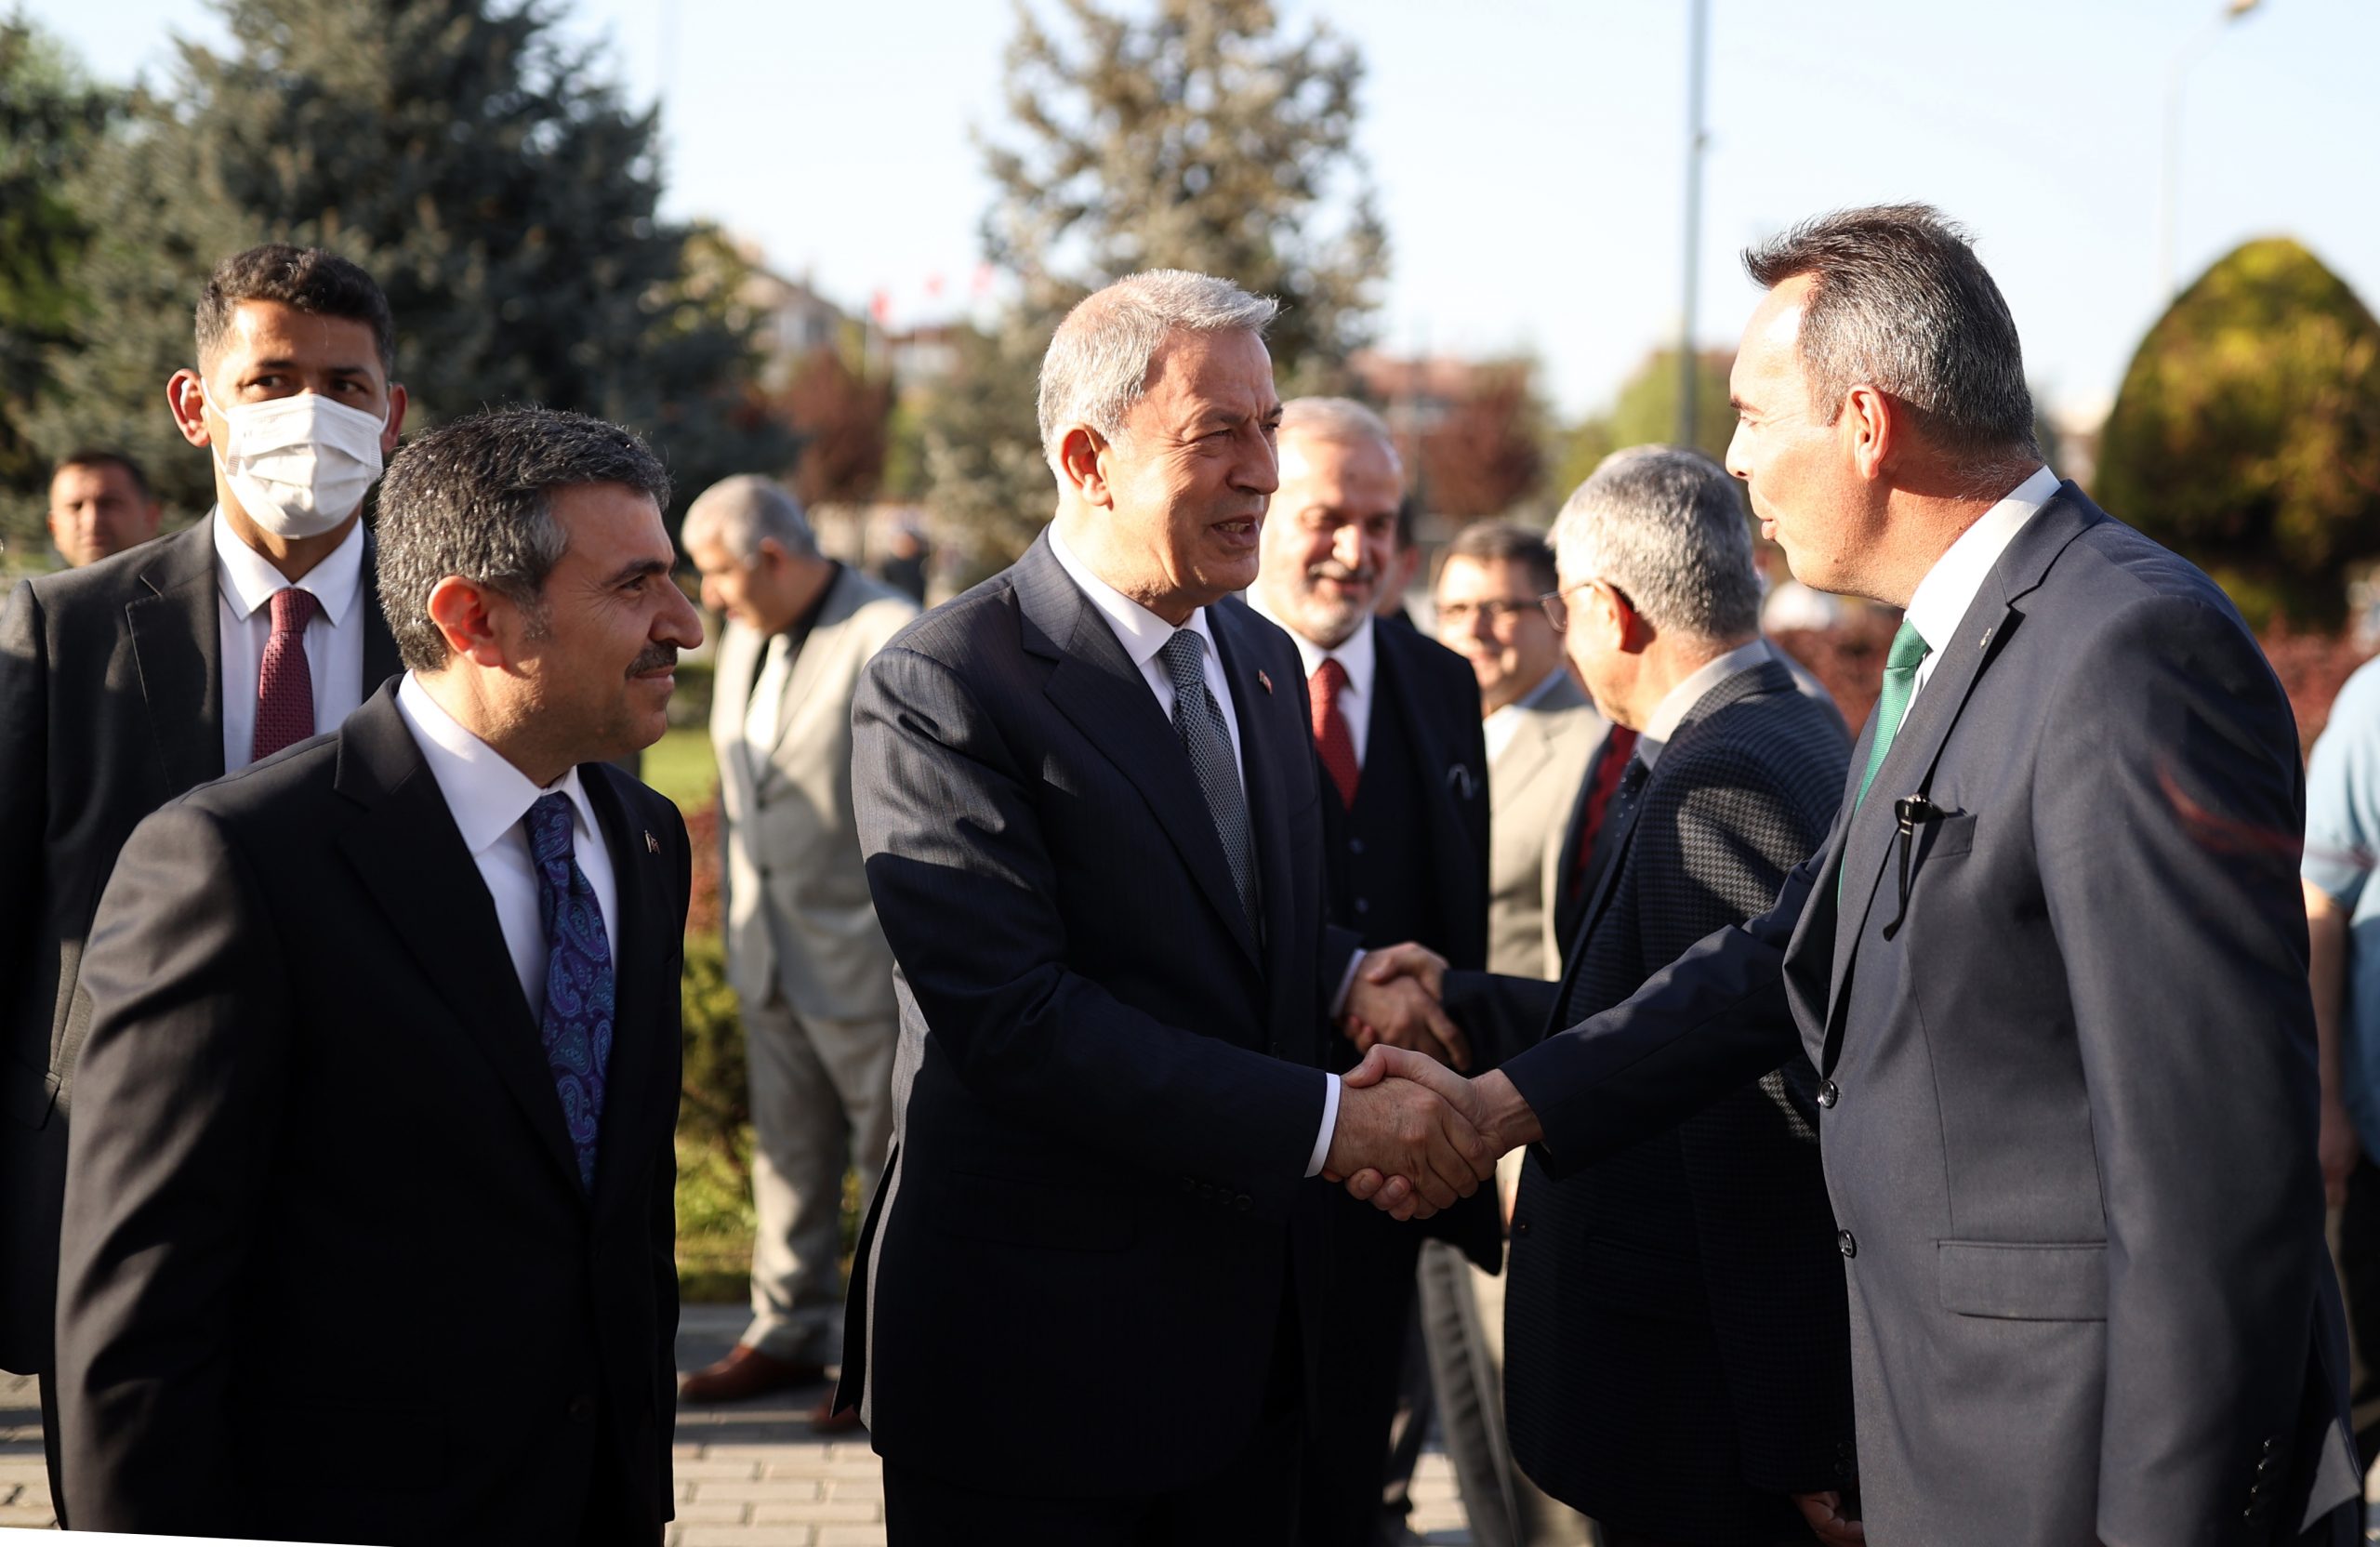 Millî Savunma Bakanı Hulusi Akar, Şanlıurfa Programının Ardından Kayseri’ye Geçti